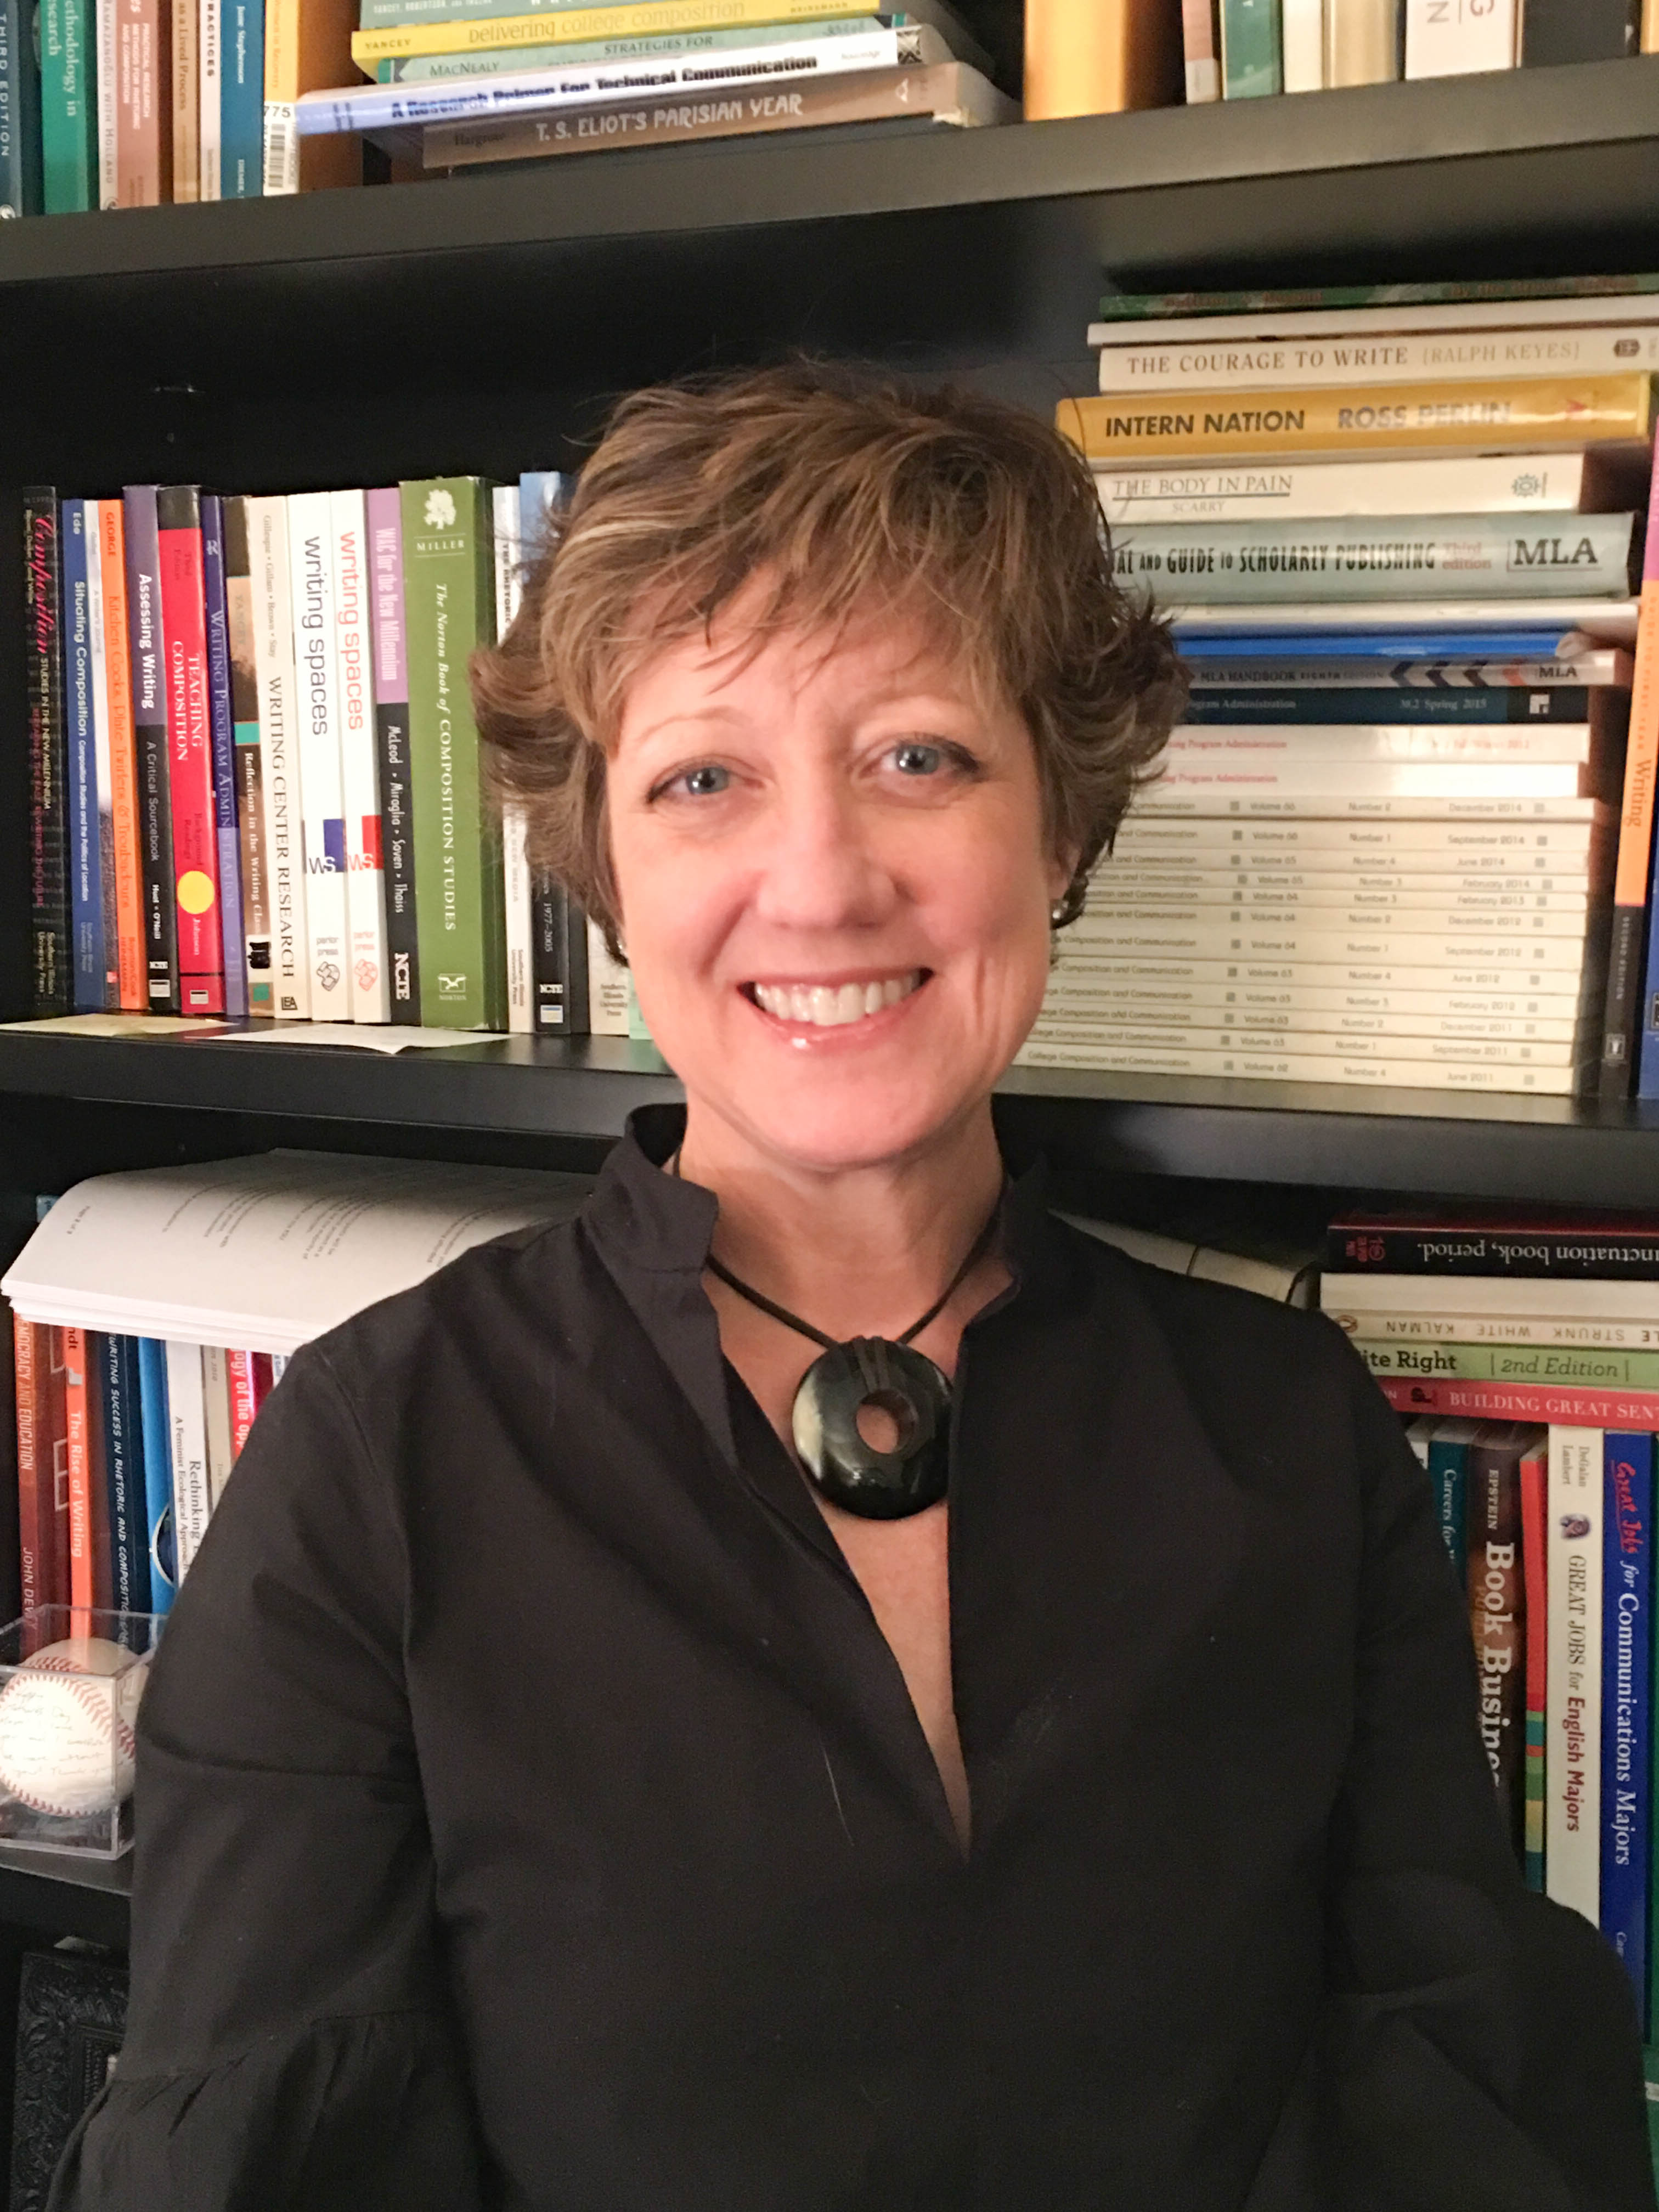 Professor Profile: Dr. Lara Smith-Sitton